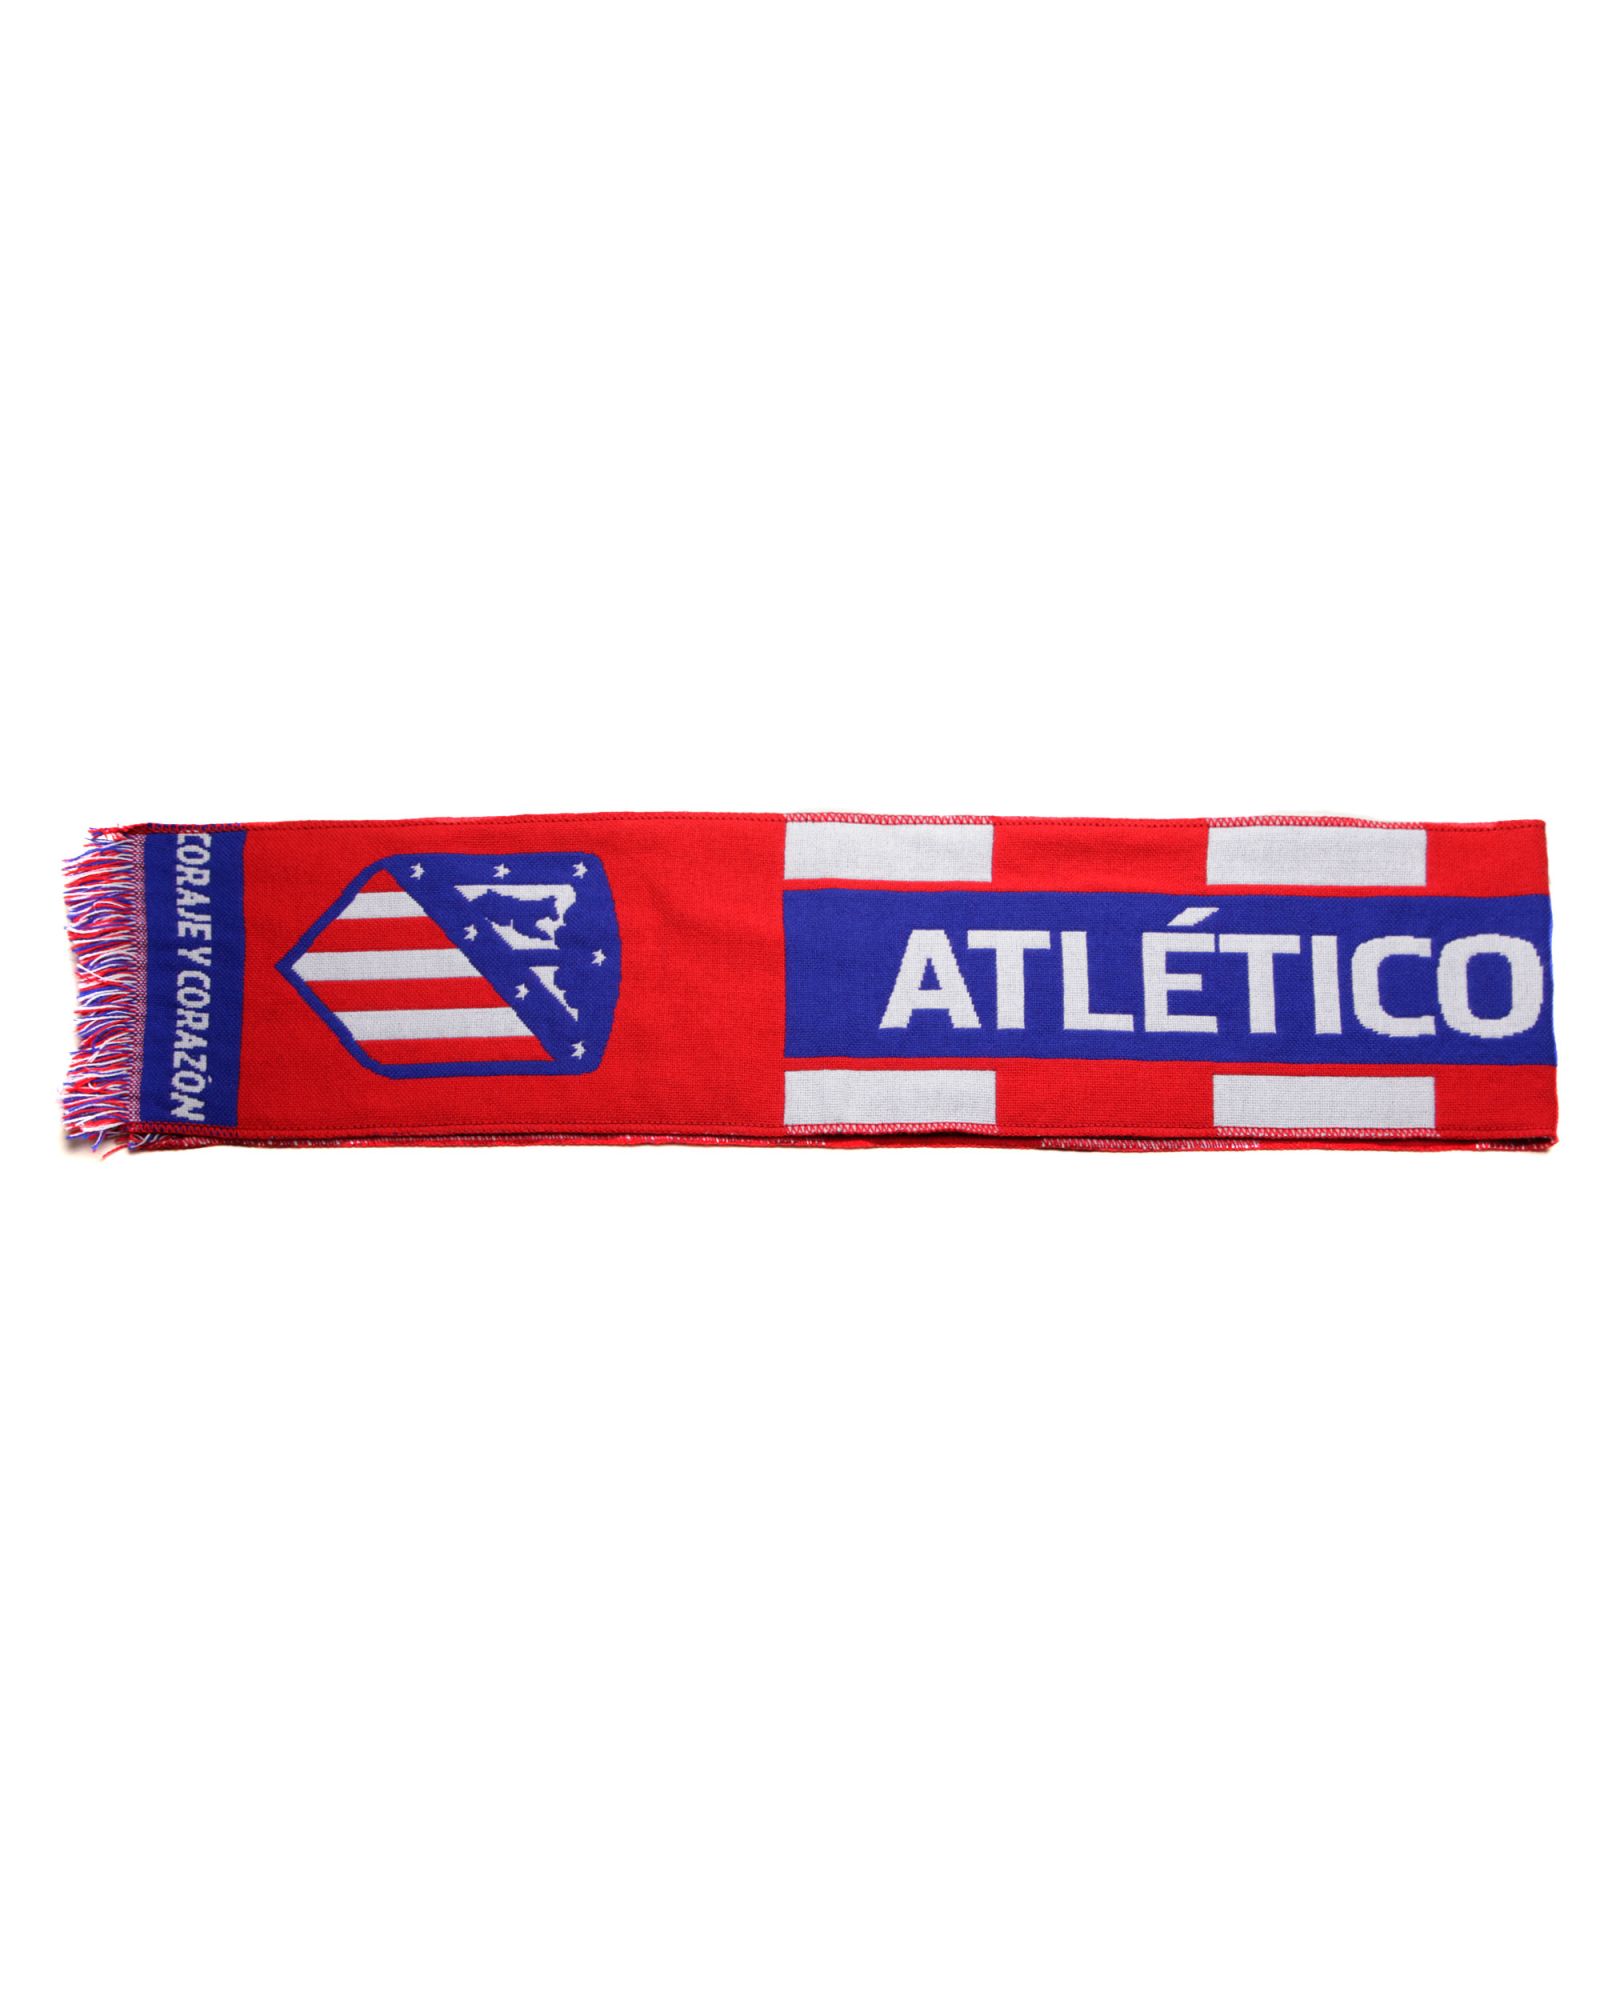 Bufanda Oficial Atlético de Madrid Nunca Dejes de Creer Rojo Blanco - Fútbol Factory